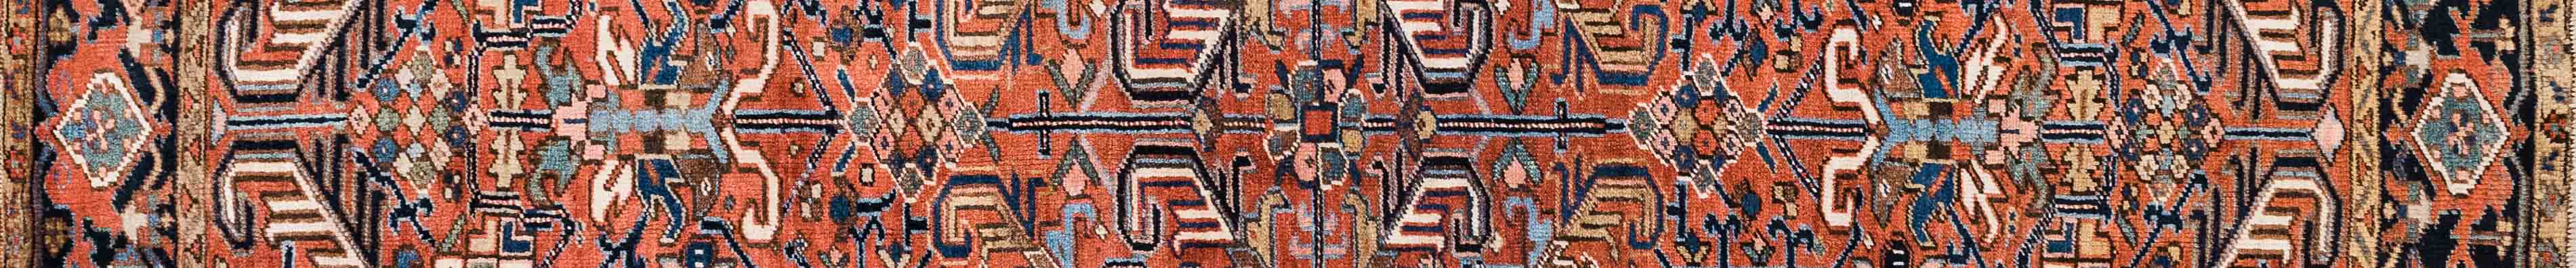 Heris Persian Carpet Rug N1Carpet Canada Montreal Tapis Persan 2400